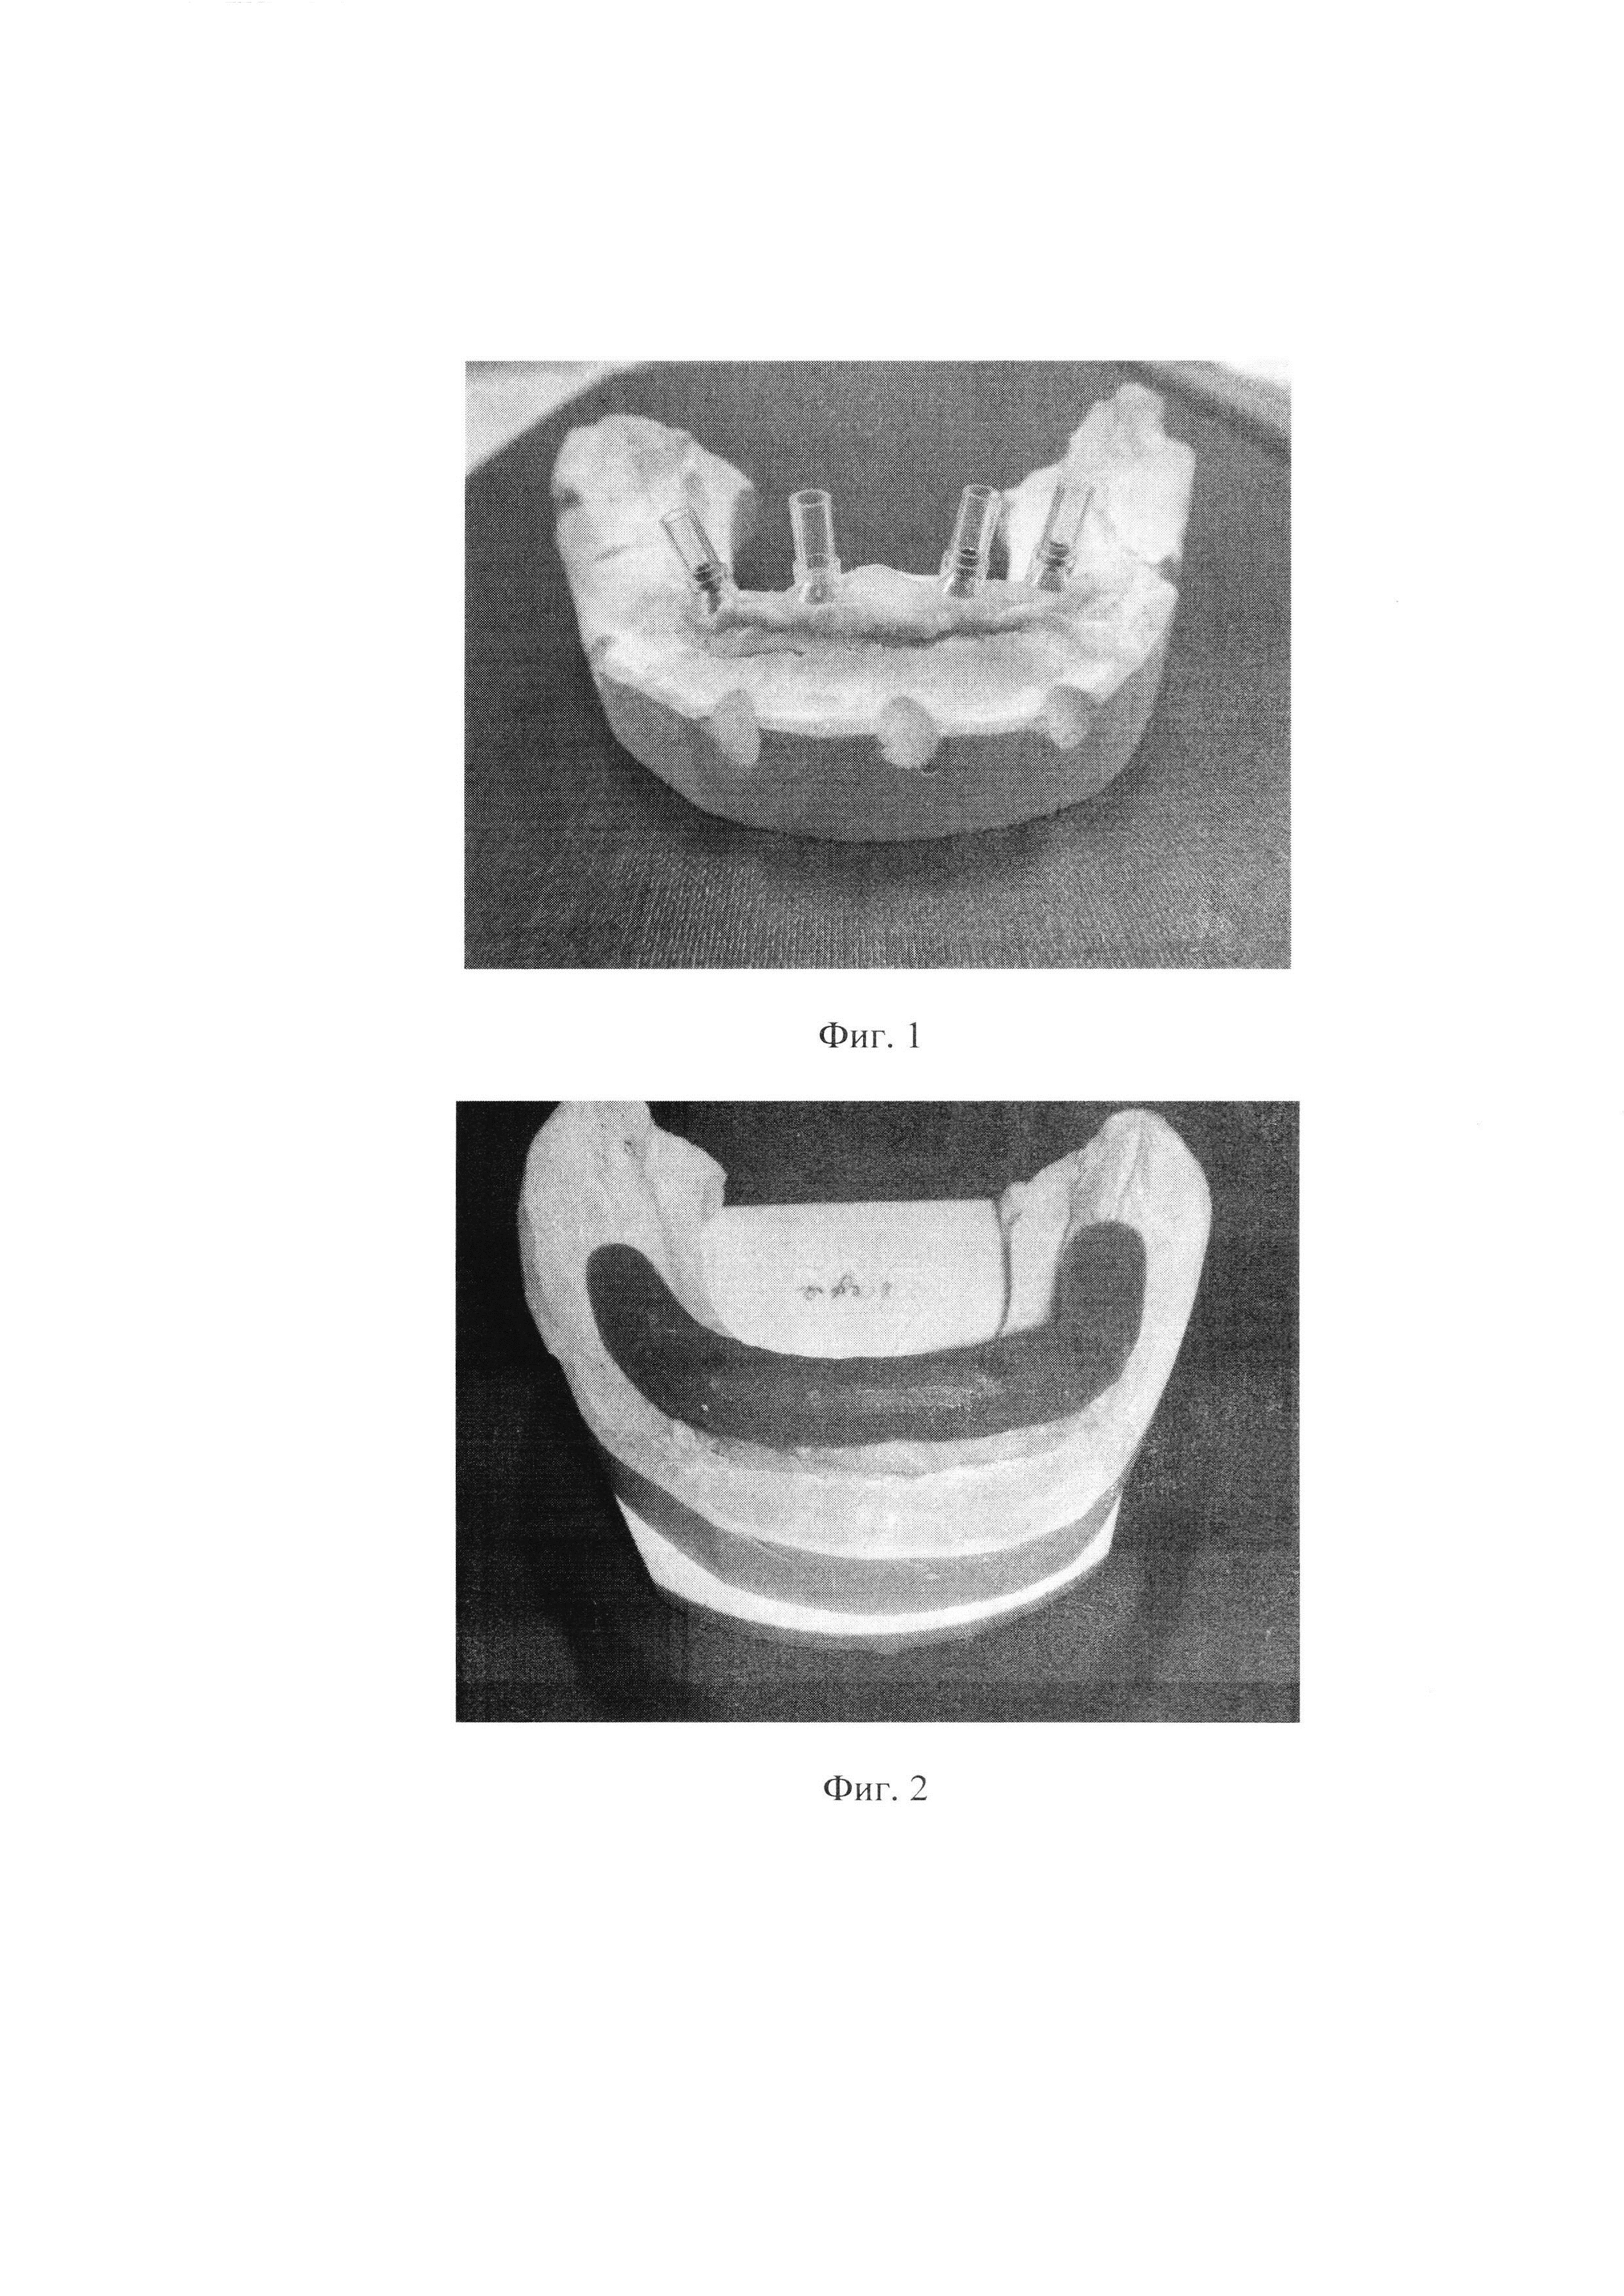 Способ определения центрального соотношения челюстей при изготовлении ортопедических конструкций, опирающихся на дентальные имплантаты, при полном отсутствии зубов